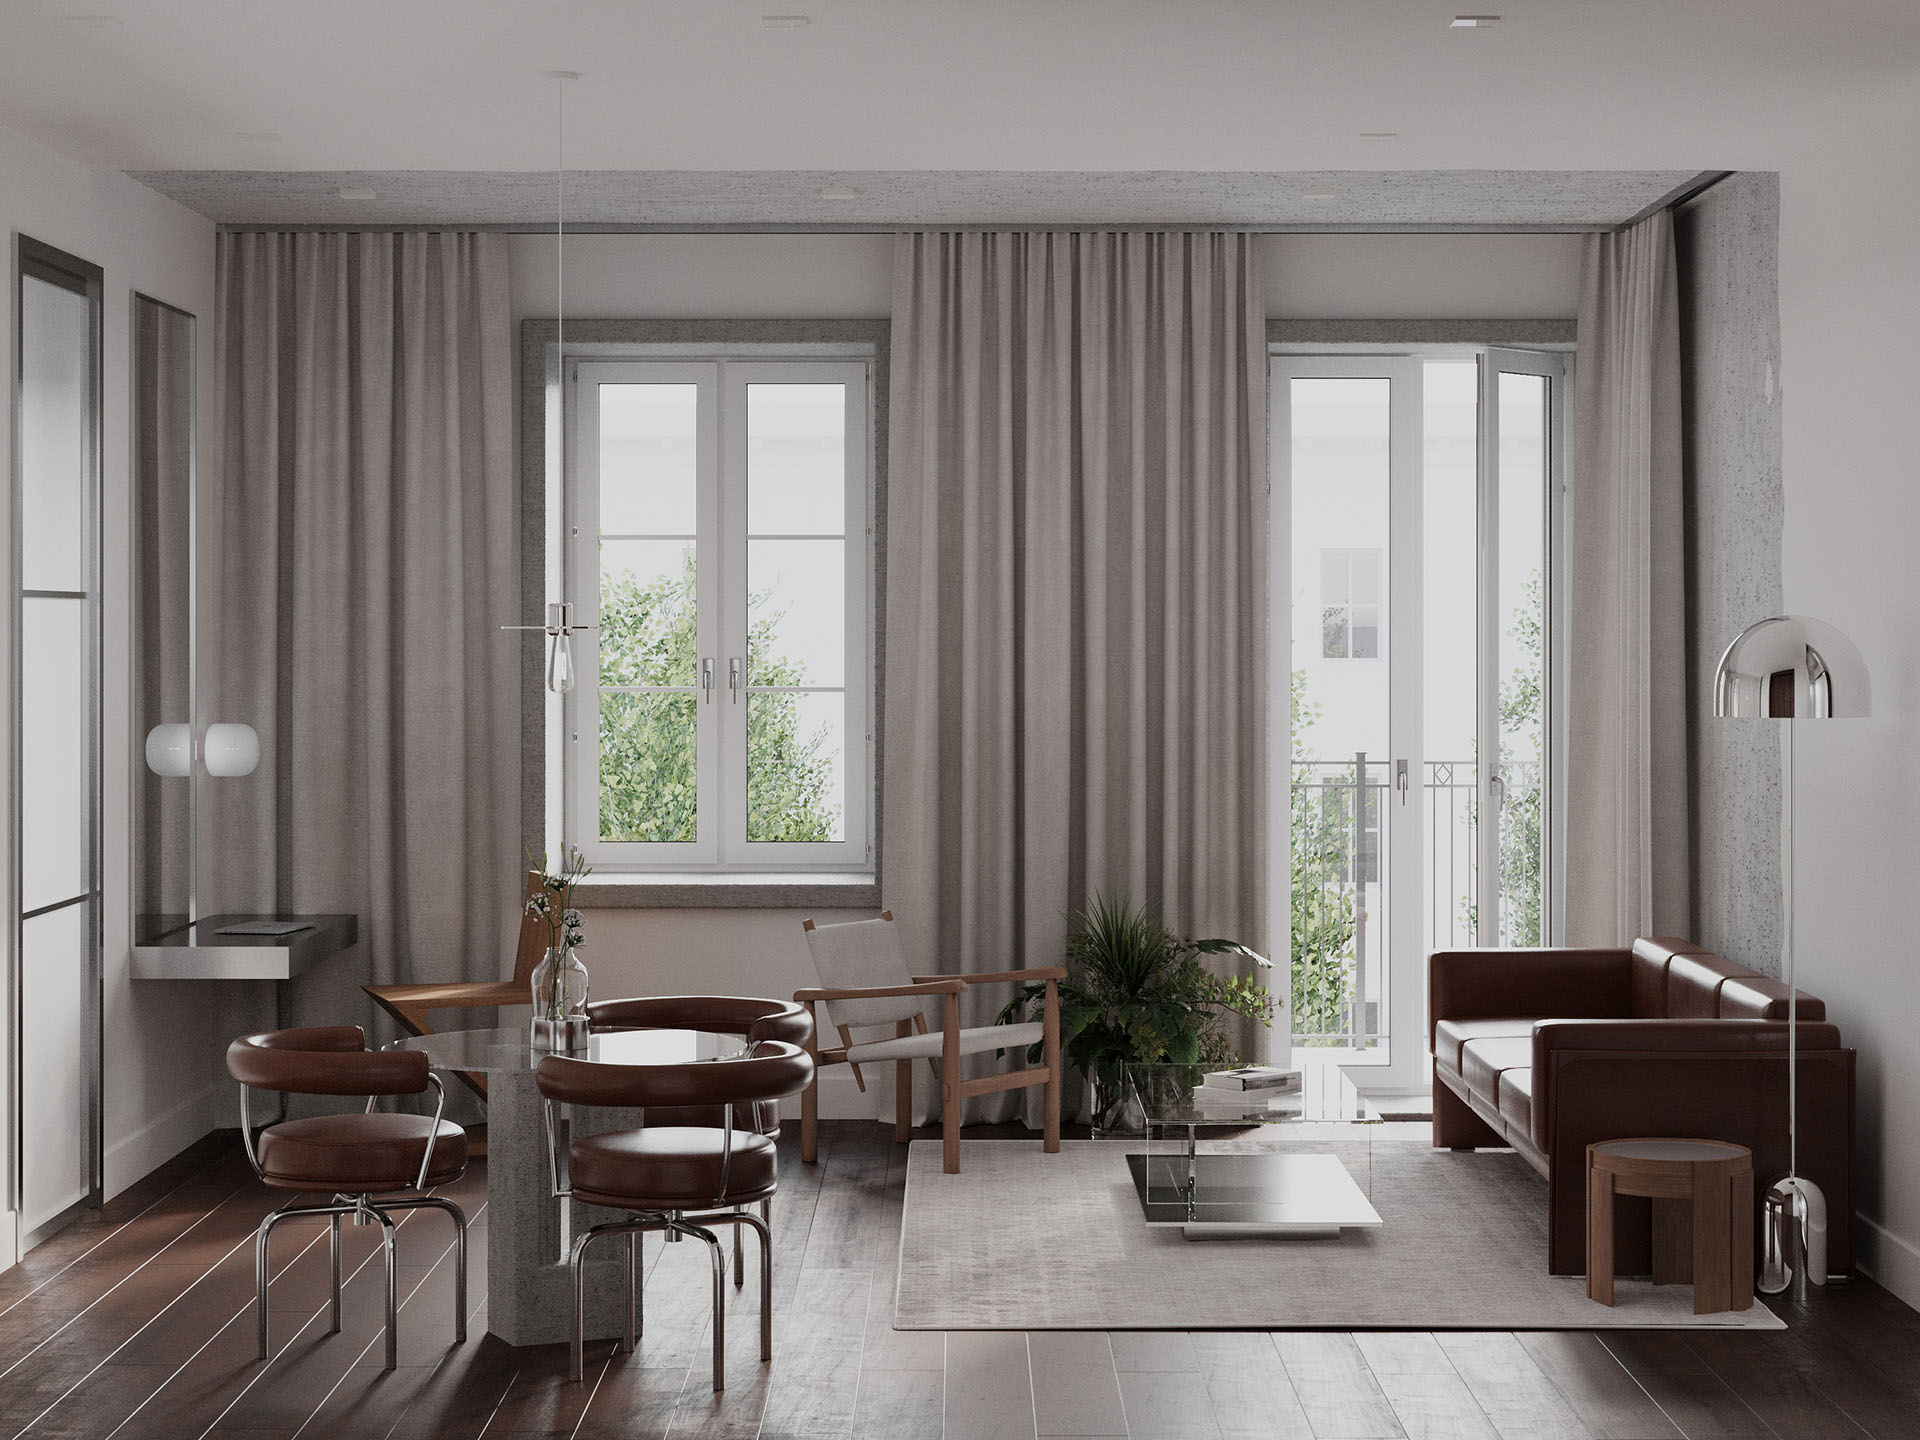 Wizualizacja wnętrza mieszkalnego - biel i metal połączona z ciepłą ciemną stolarką i skórzanymi meblami